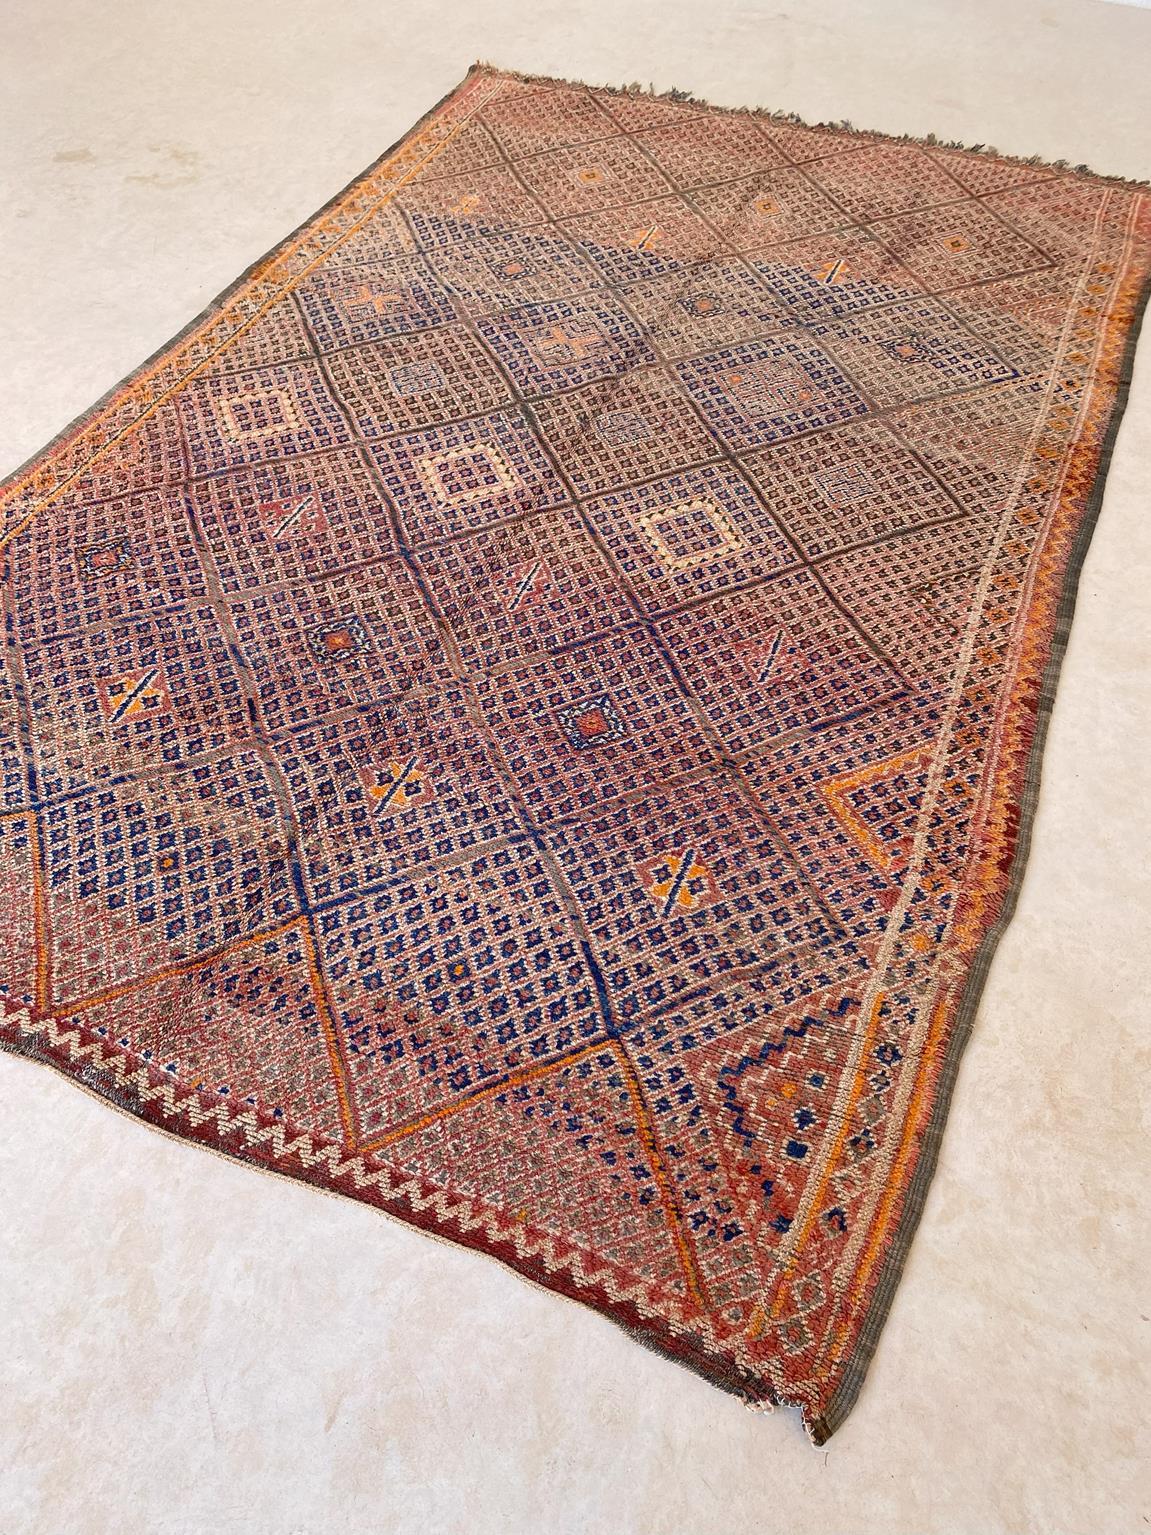 Vintage Beni Mguild rug - Orange/terracotta/blue - 6.1x9.8feet / 186x298cm For Sale 3